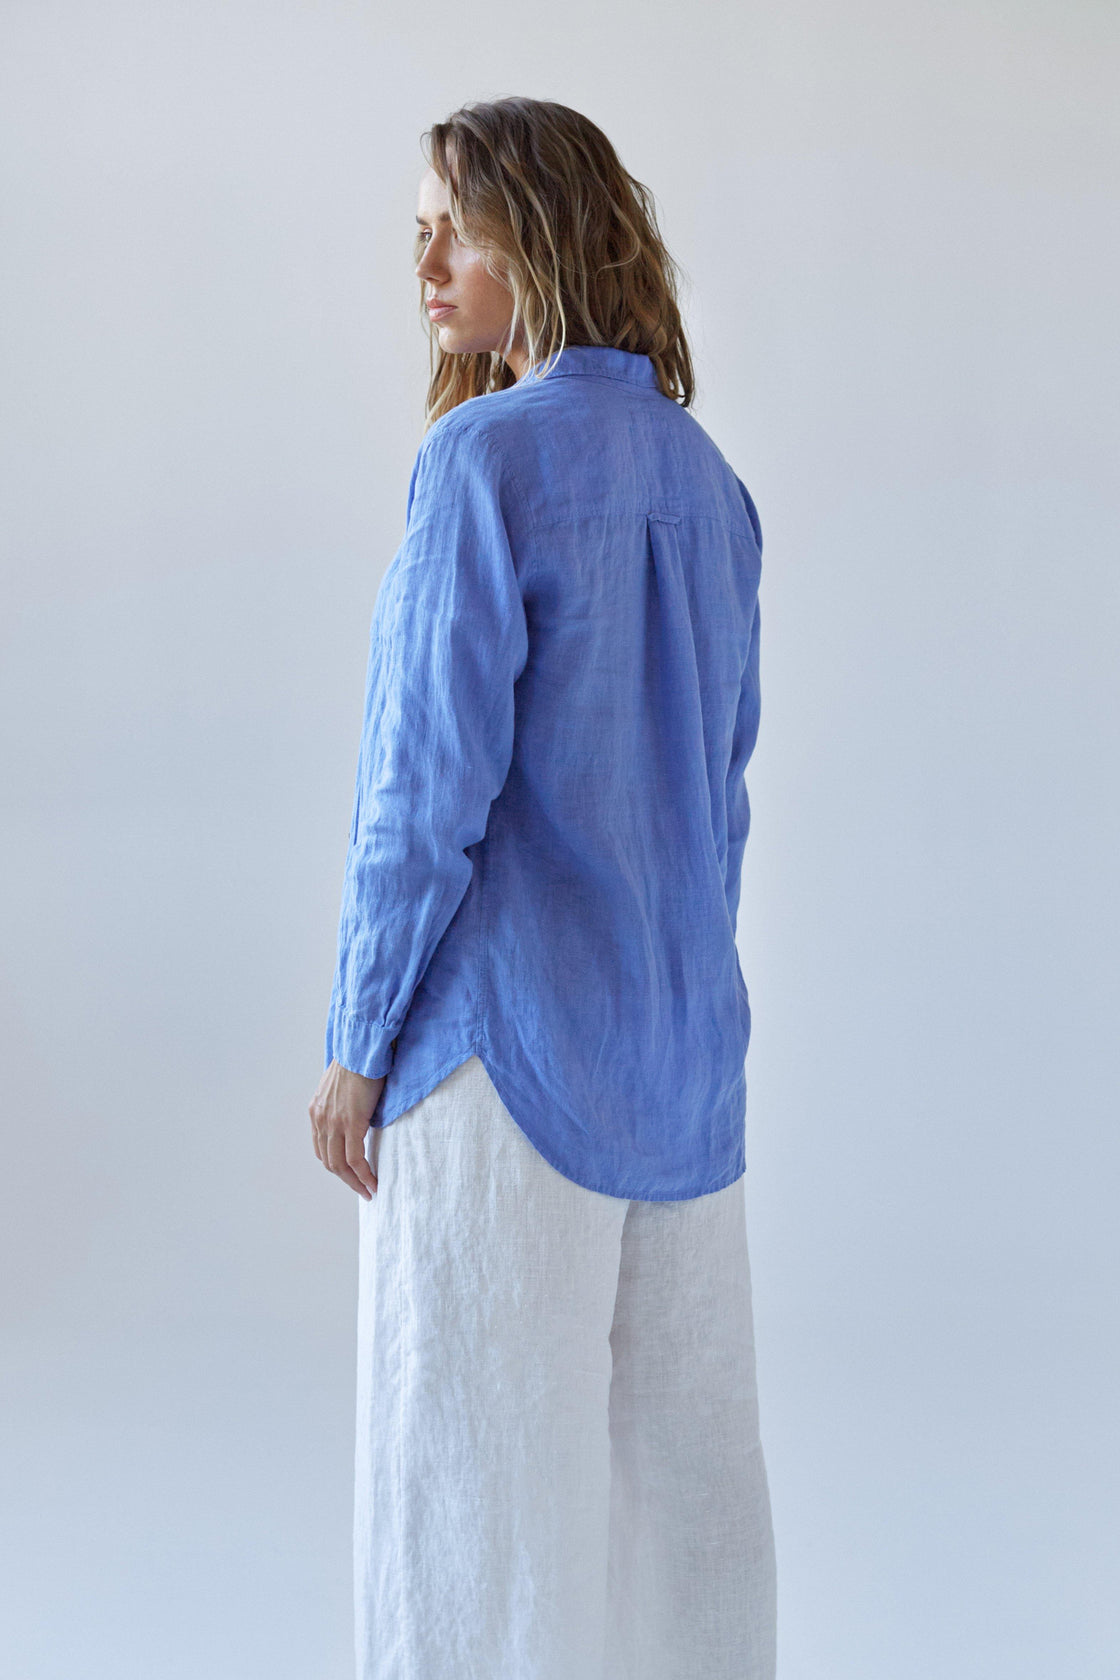 women's blue linen blouse - Manufacture de Lin